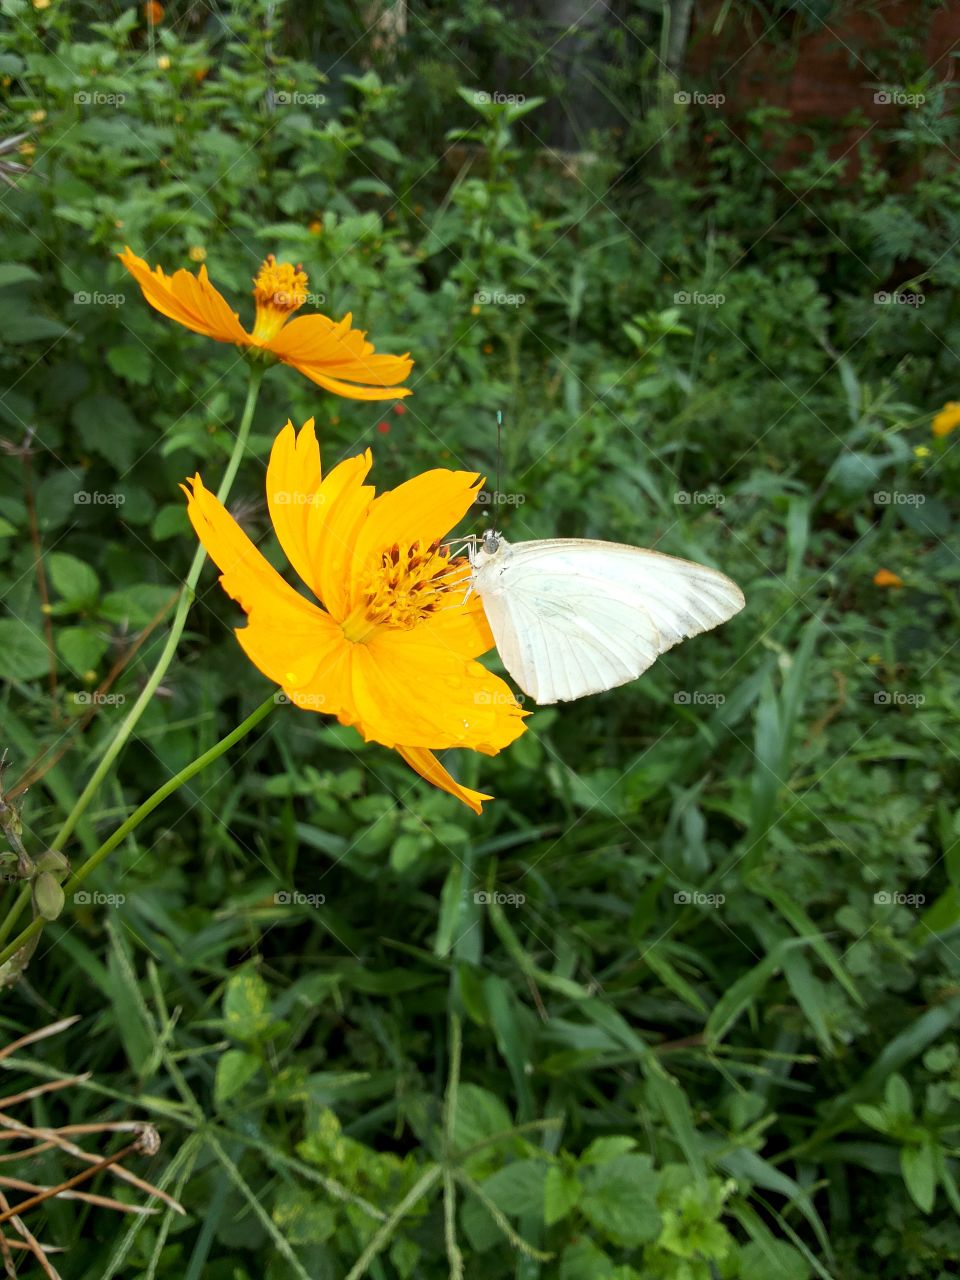 Butterfly in yellow flower